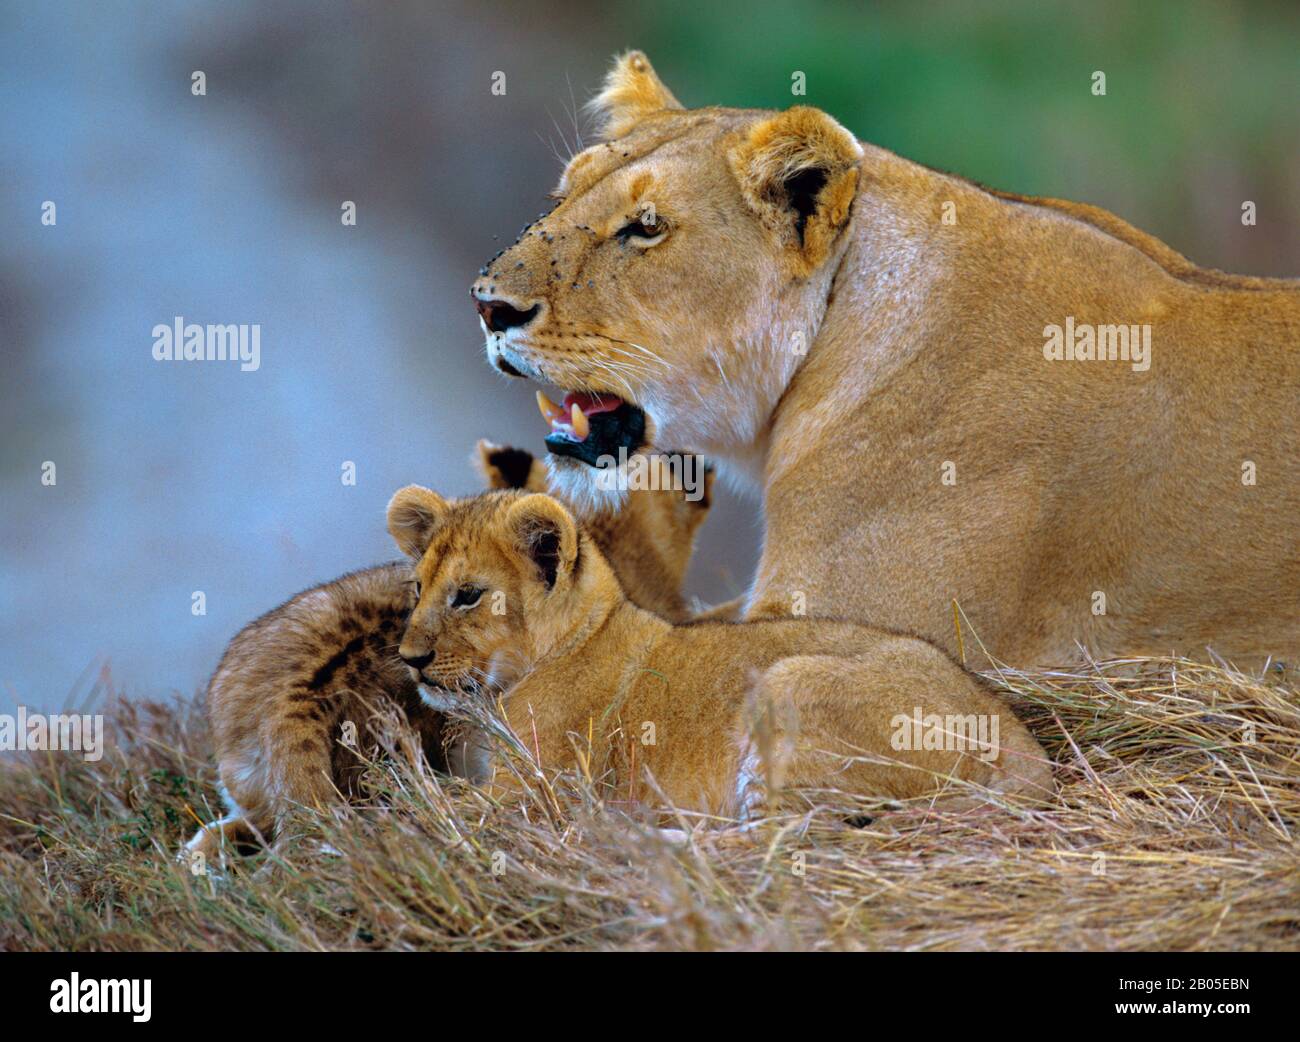 Lion (Panthera leo), lioness avec deux chiots de lion, Afrique Banque D'Images